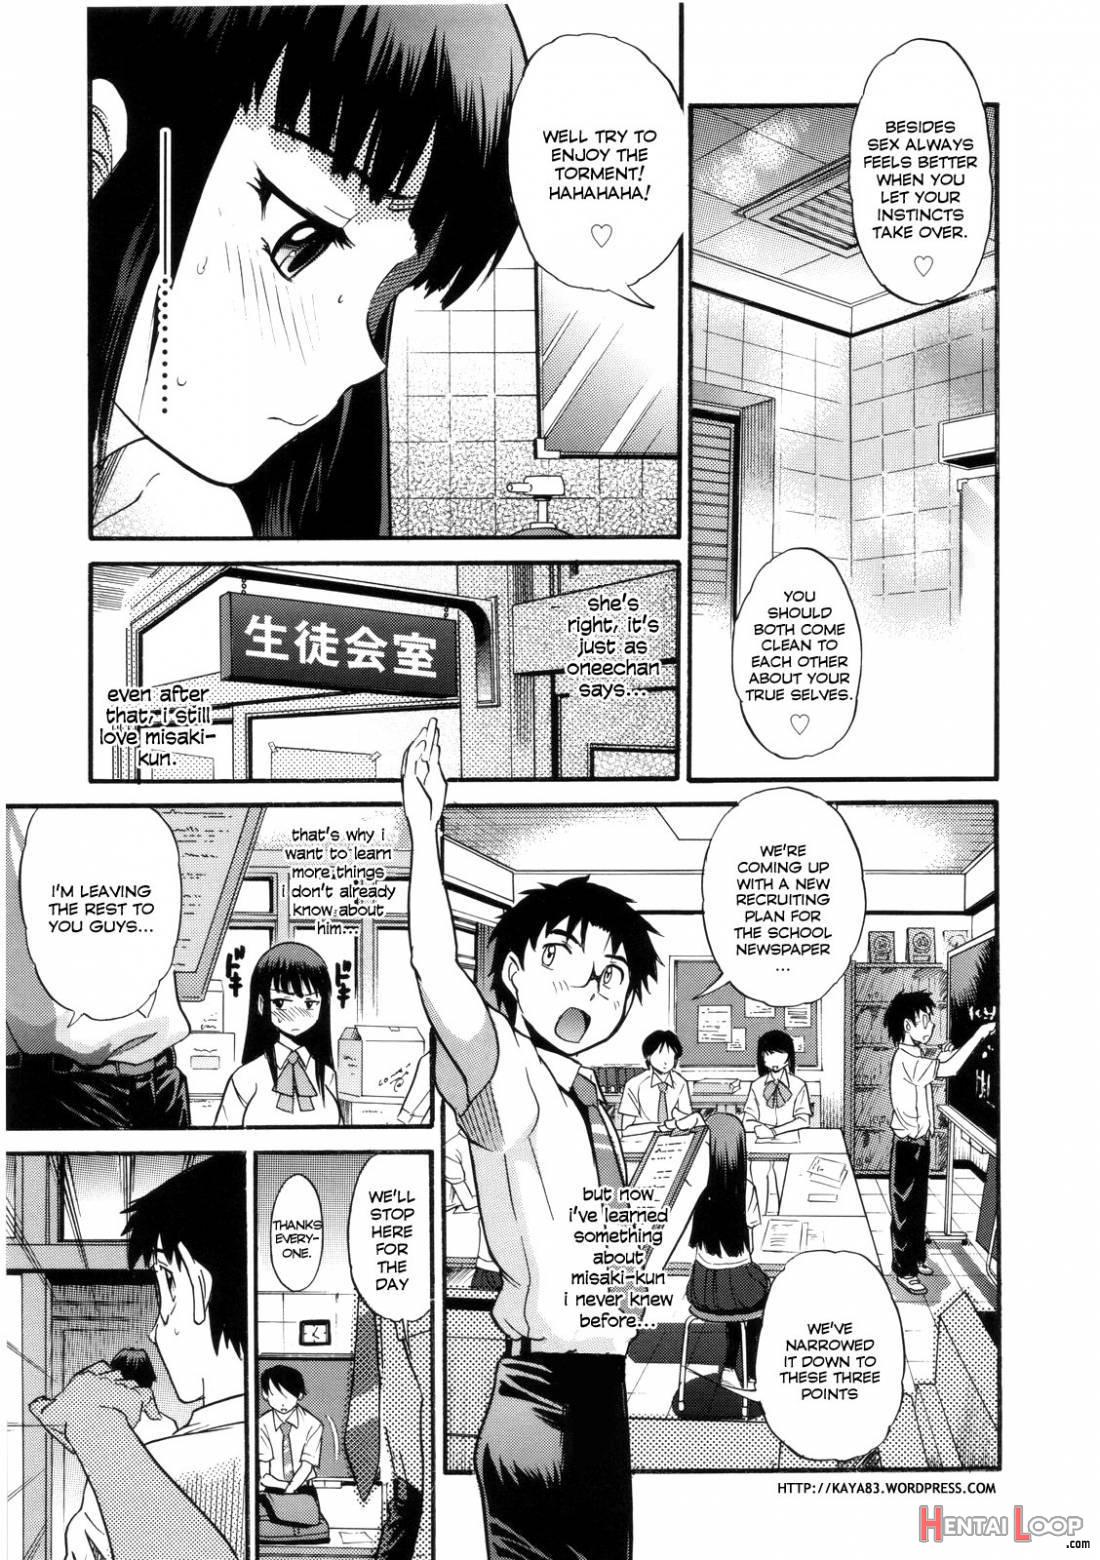 B-Chiku page 155